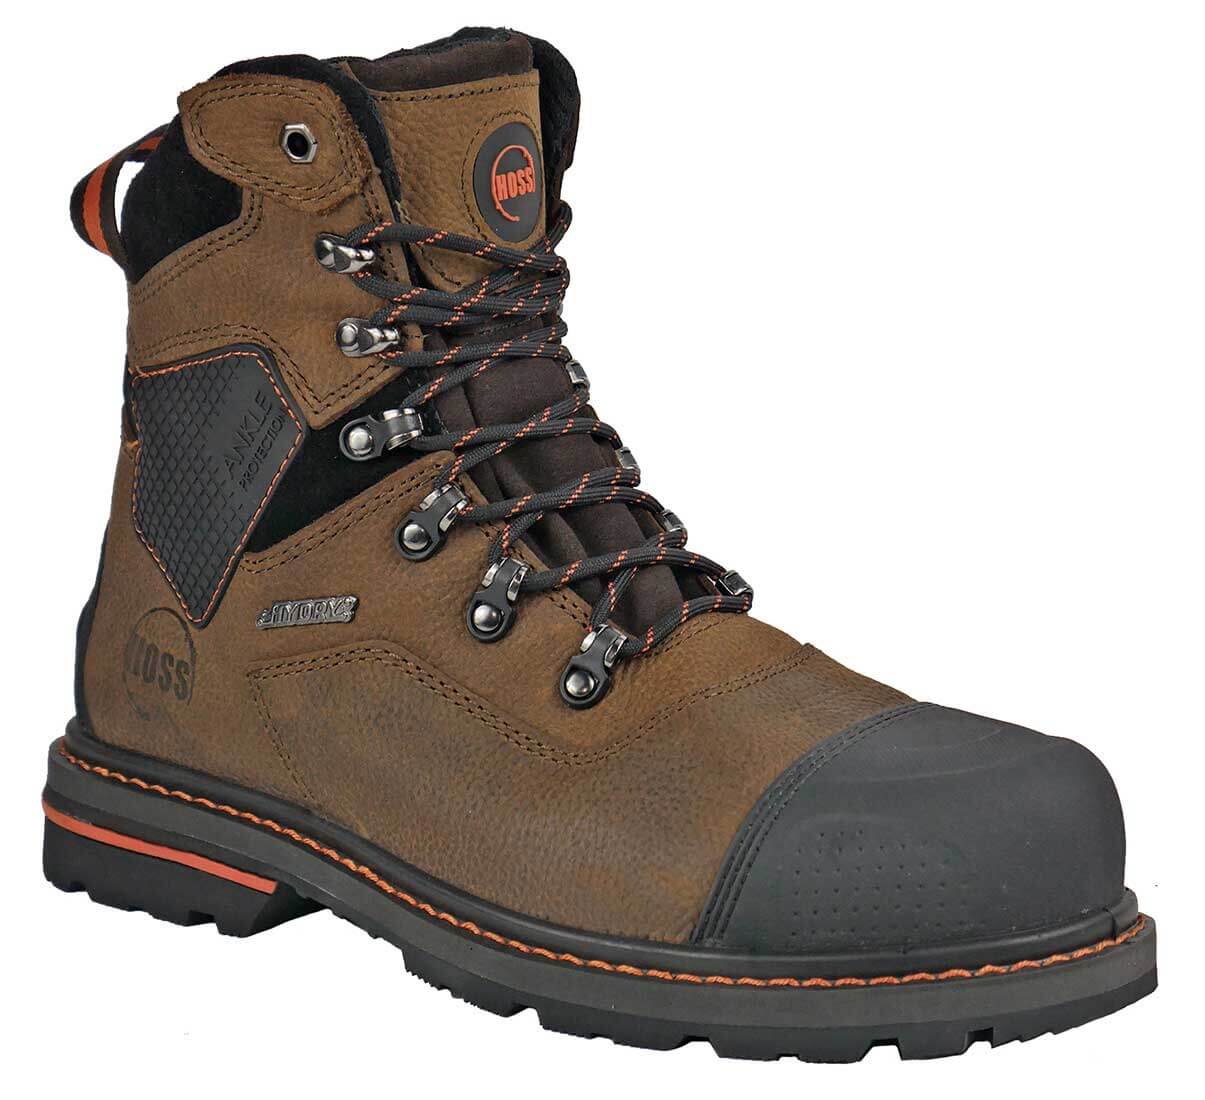 Hoss Boots 61110 Range Men's 6 Waterproof Composite Toe Work Boot - Extra Depth